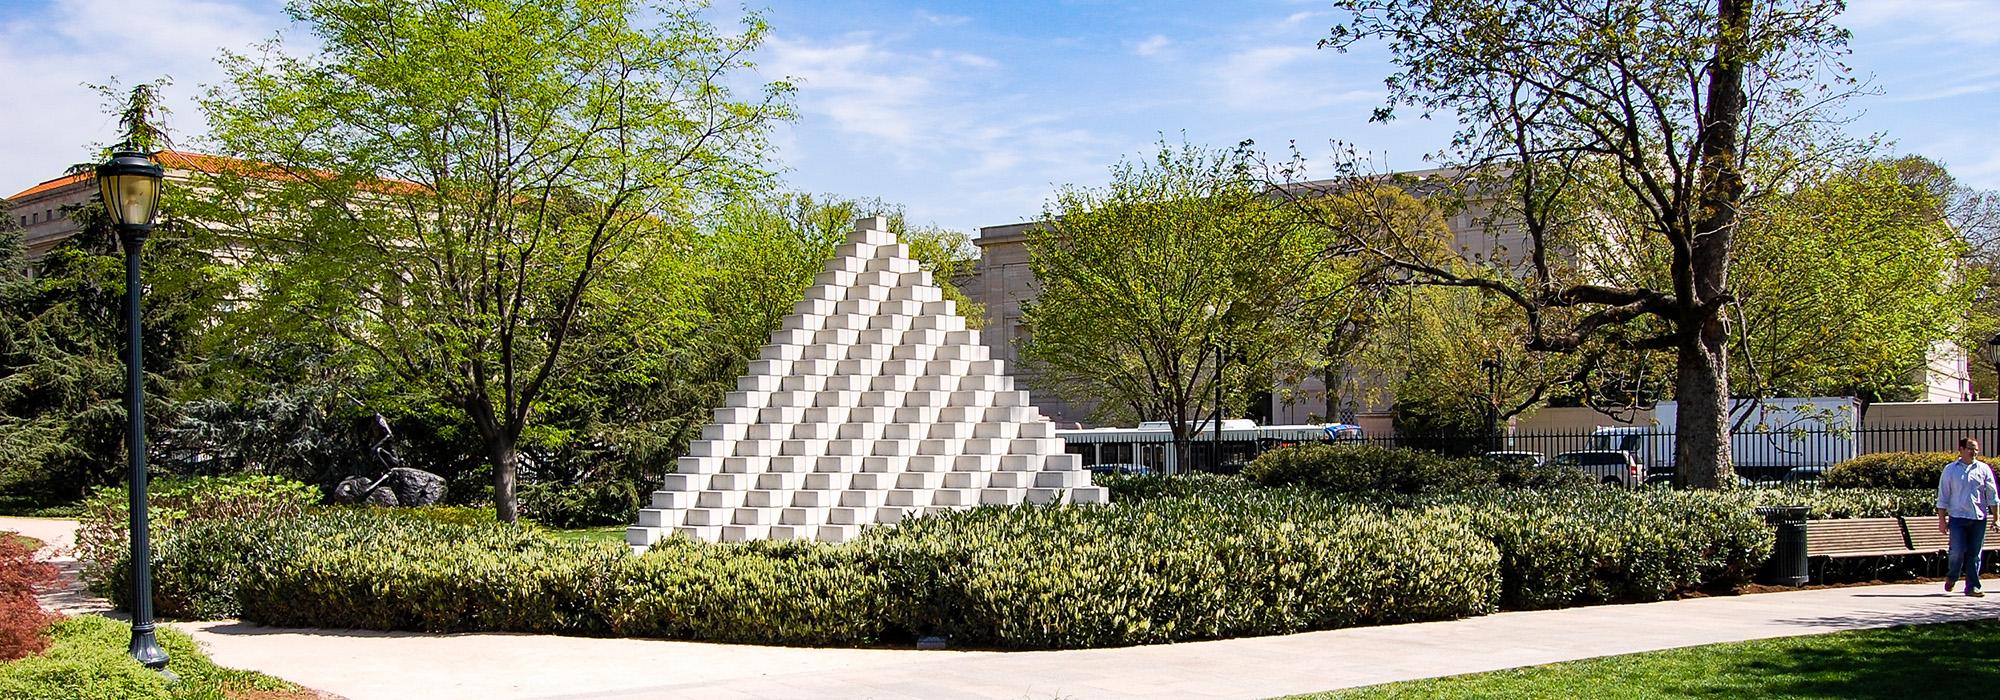 National Gallery of Art Sculpture Garden, Washington, D.C.